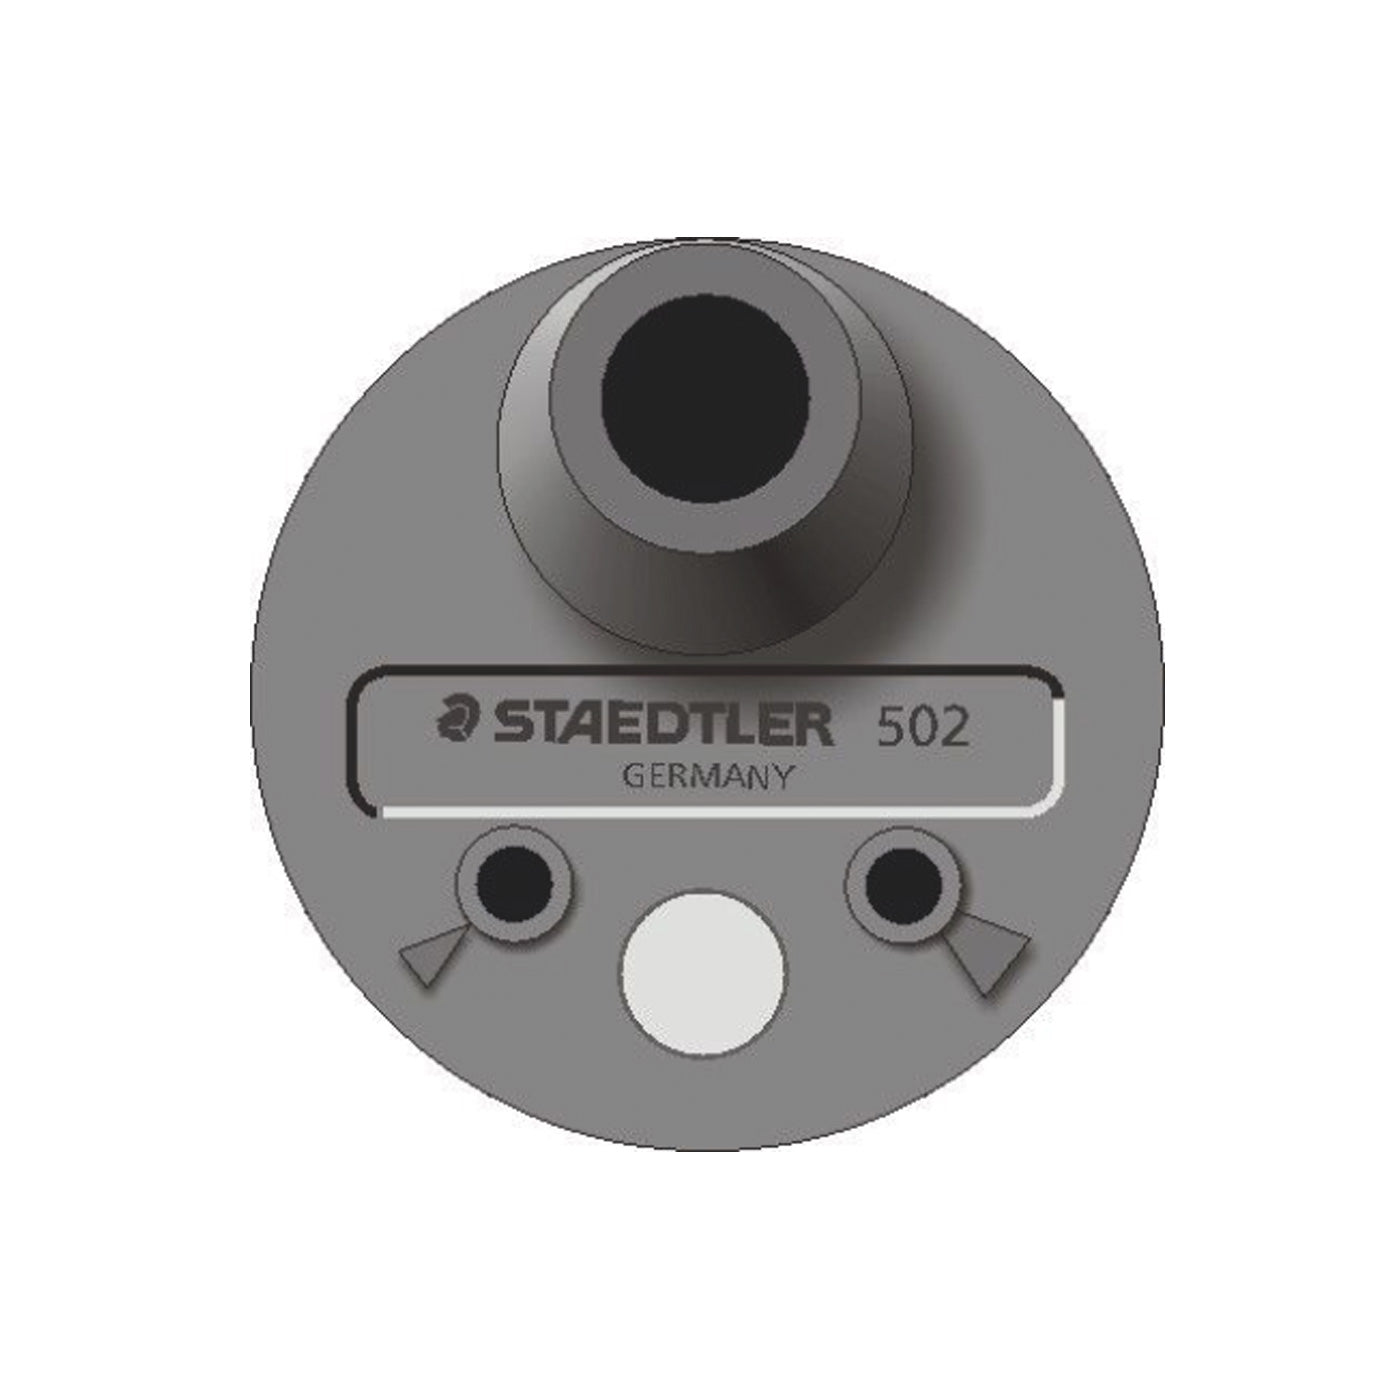 Staedtler Lead Pointer 502 Sharpener for 2mm Lead